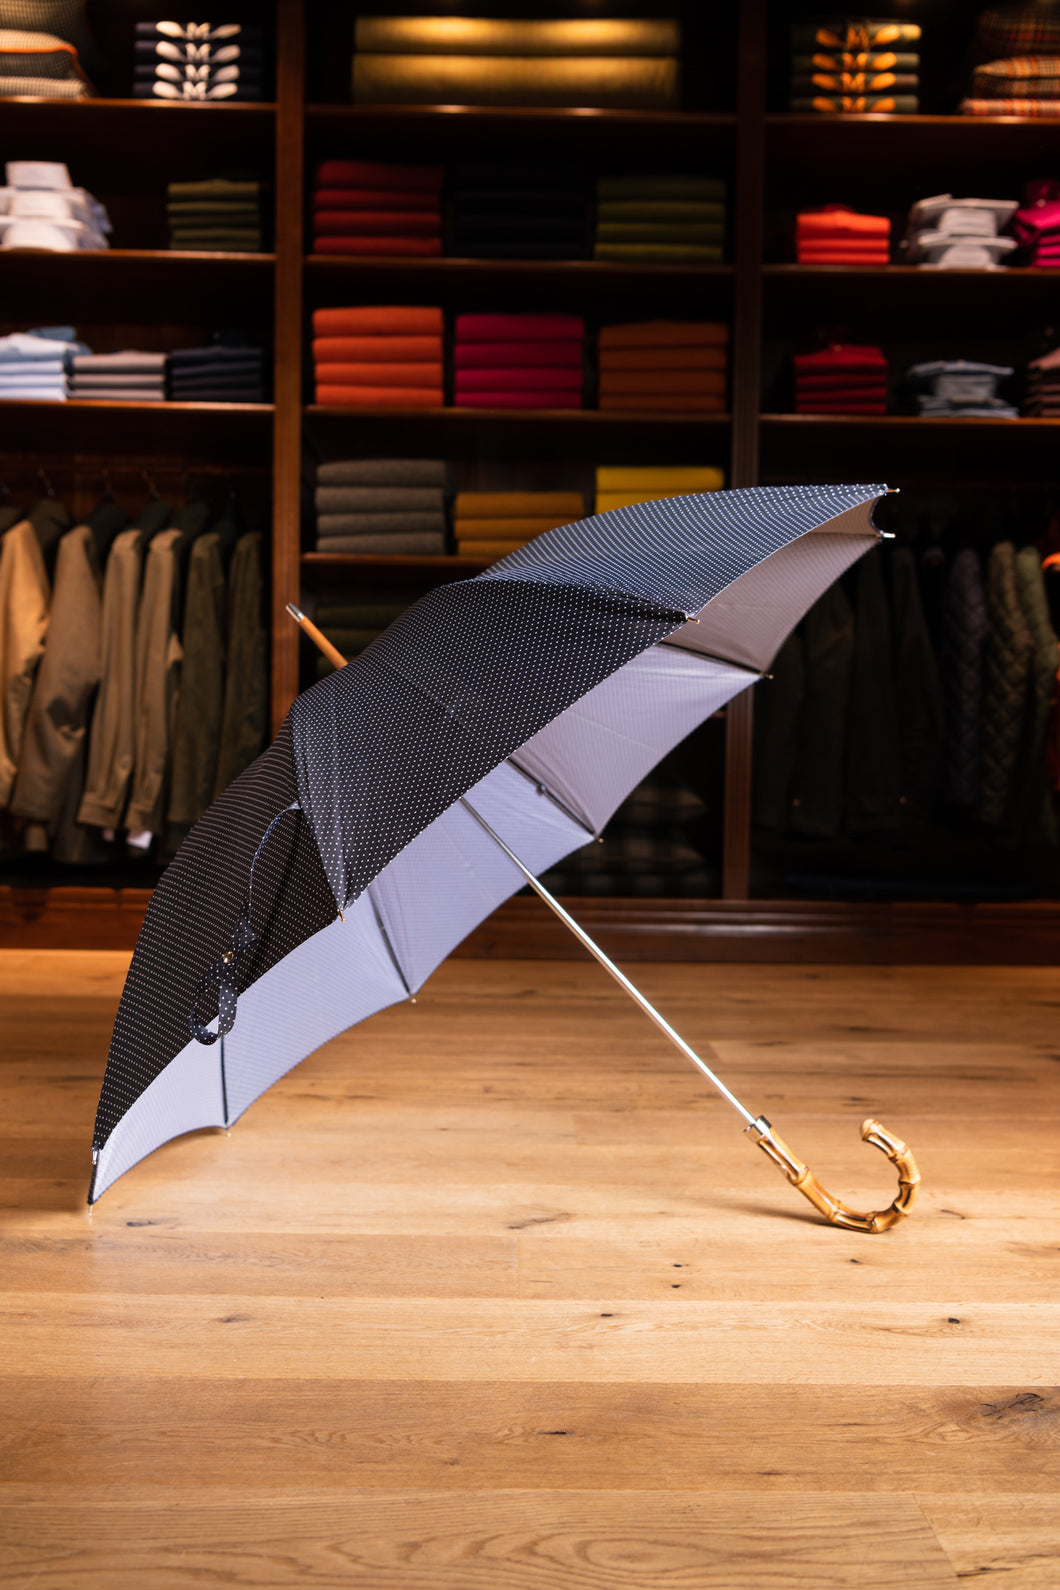 Regenschirm “Francesco Maglia” - Gentlemen Edition - Bambus Griff - gepunktet weiß auf blau